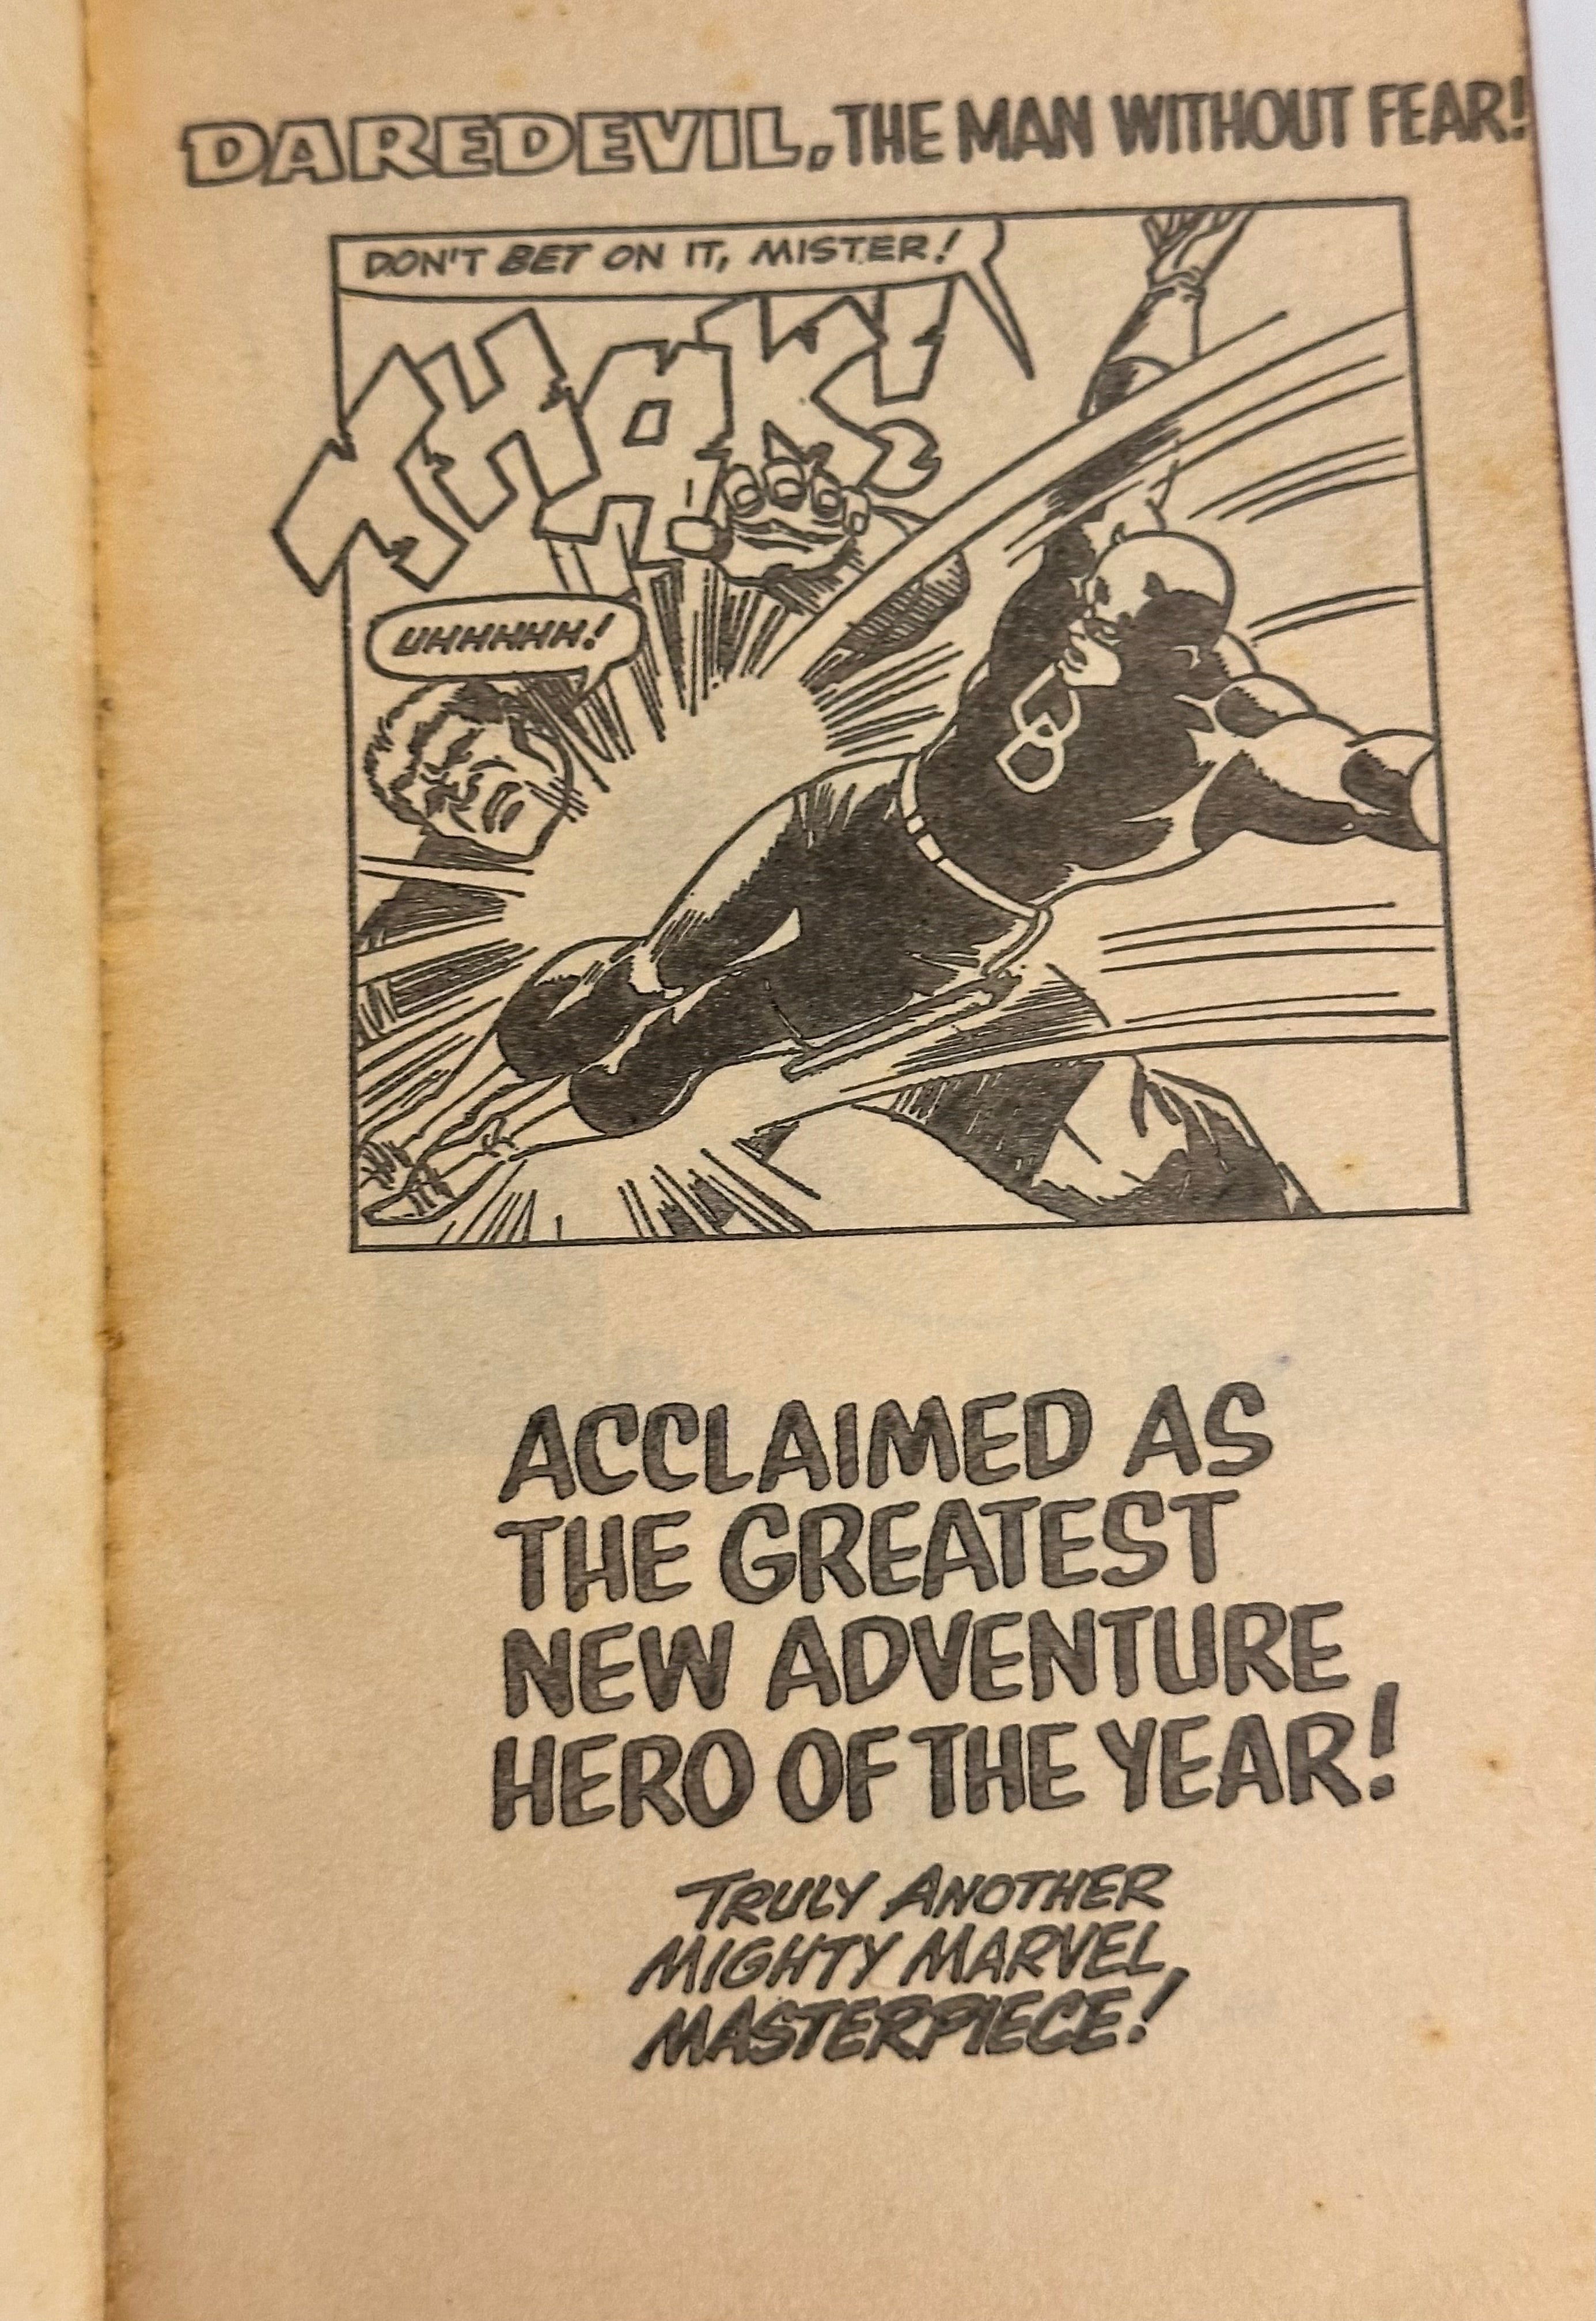 Daredevil rare vintage comic pocket book 1967